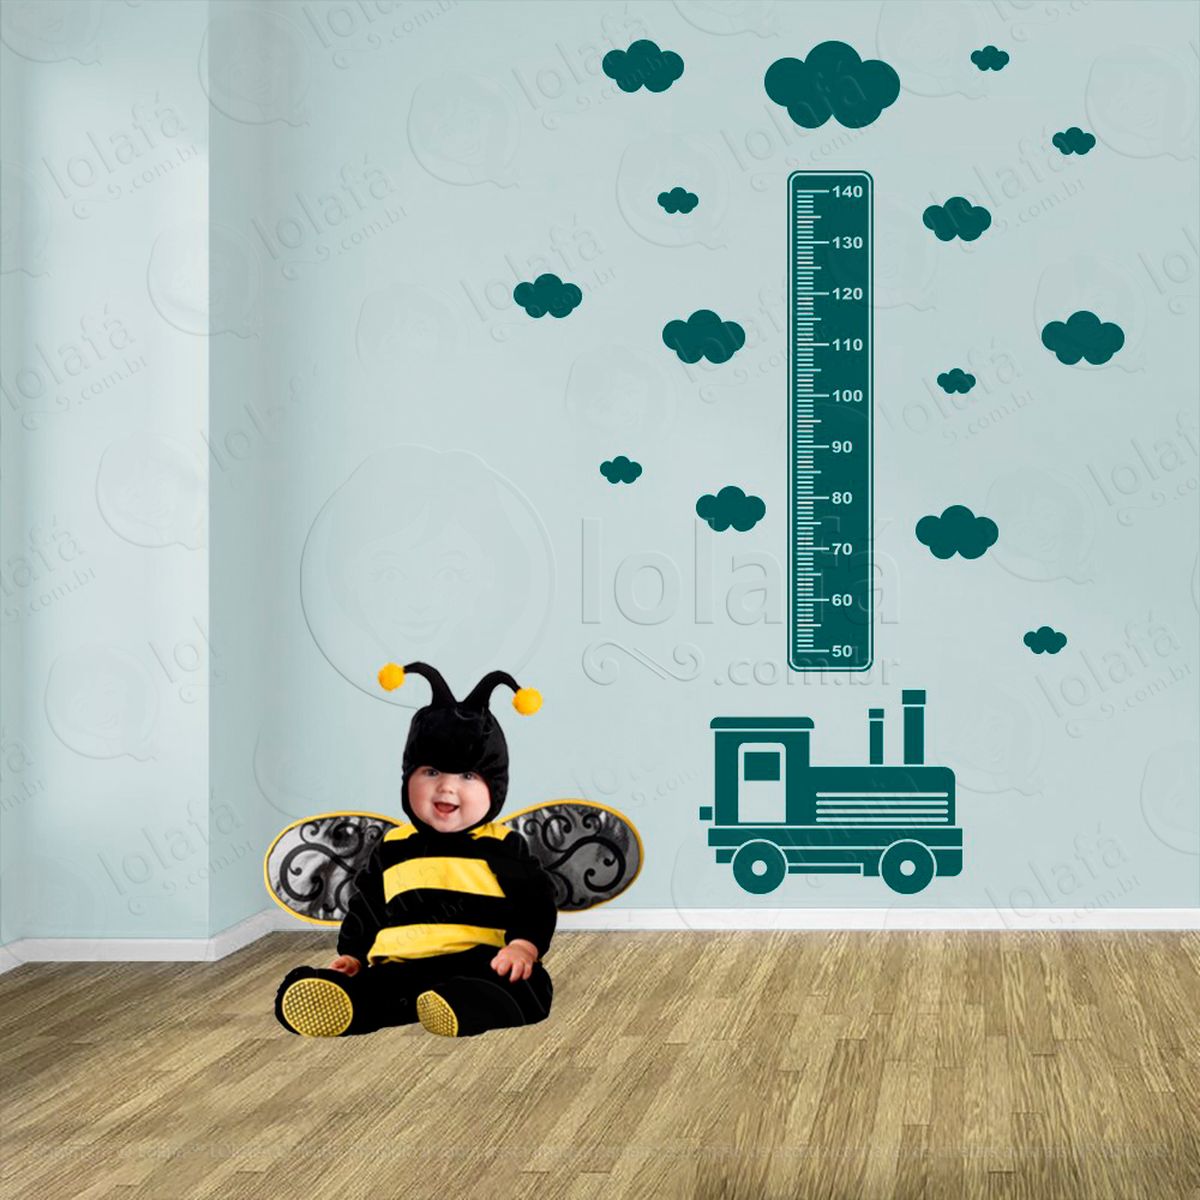 trêm e nuvens adesivo régua de crescimento infantil, medidor de altura para quarto, porta e parede - mod:1510